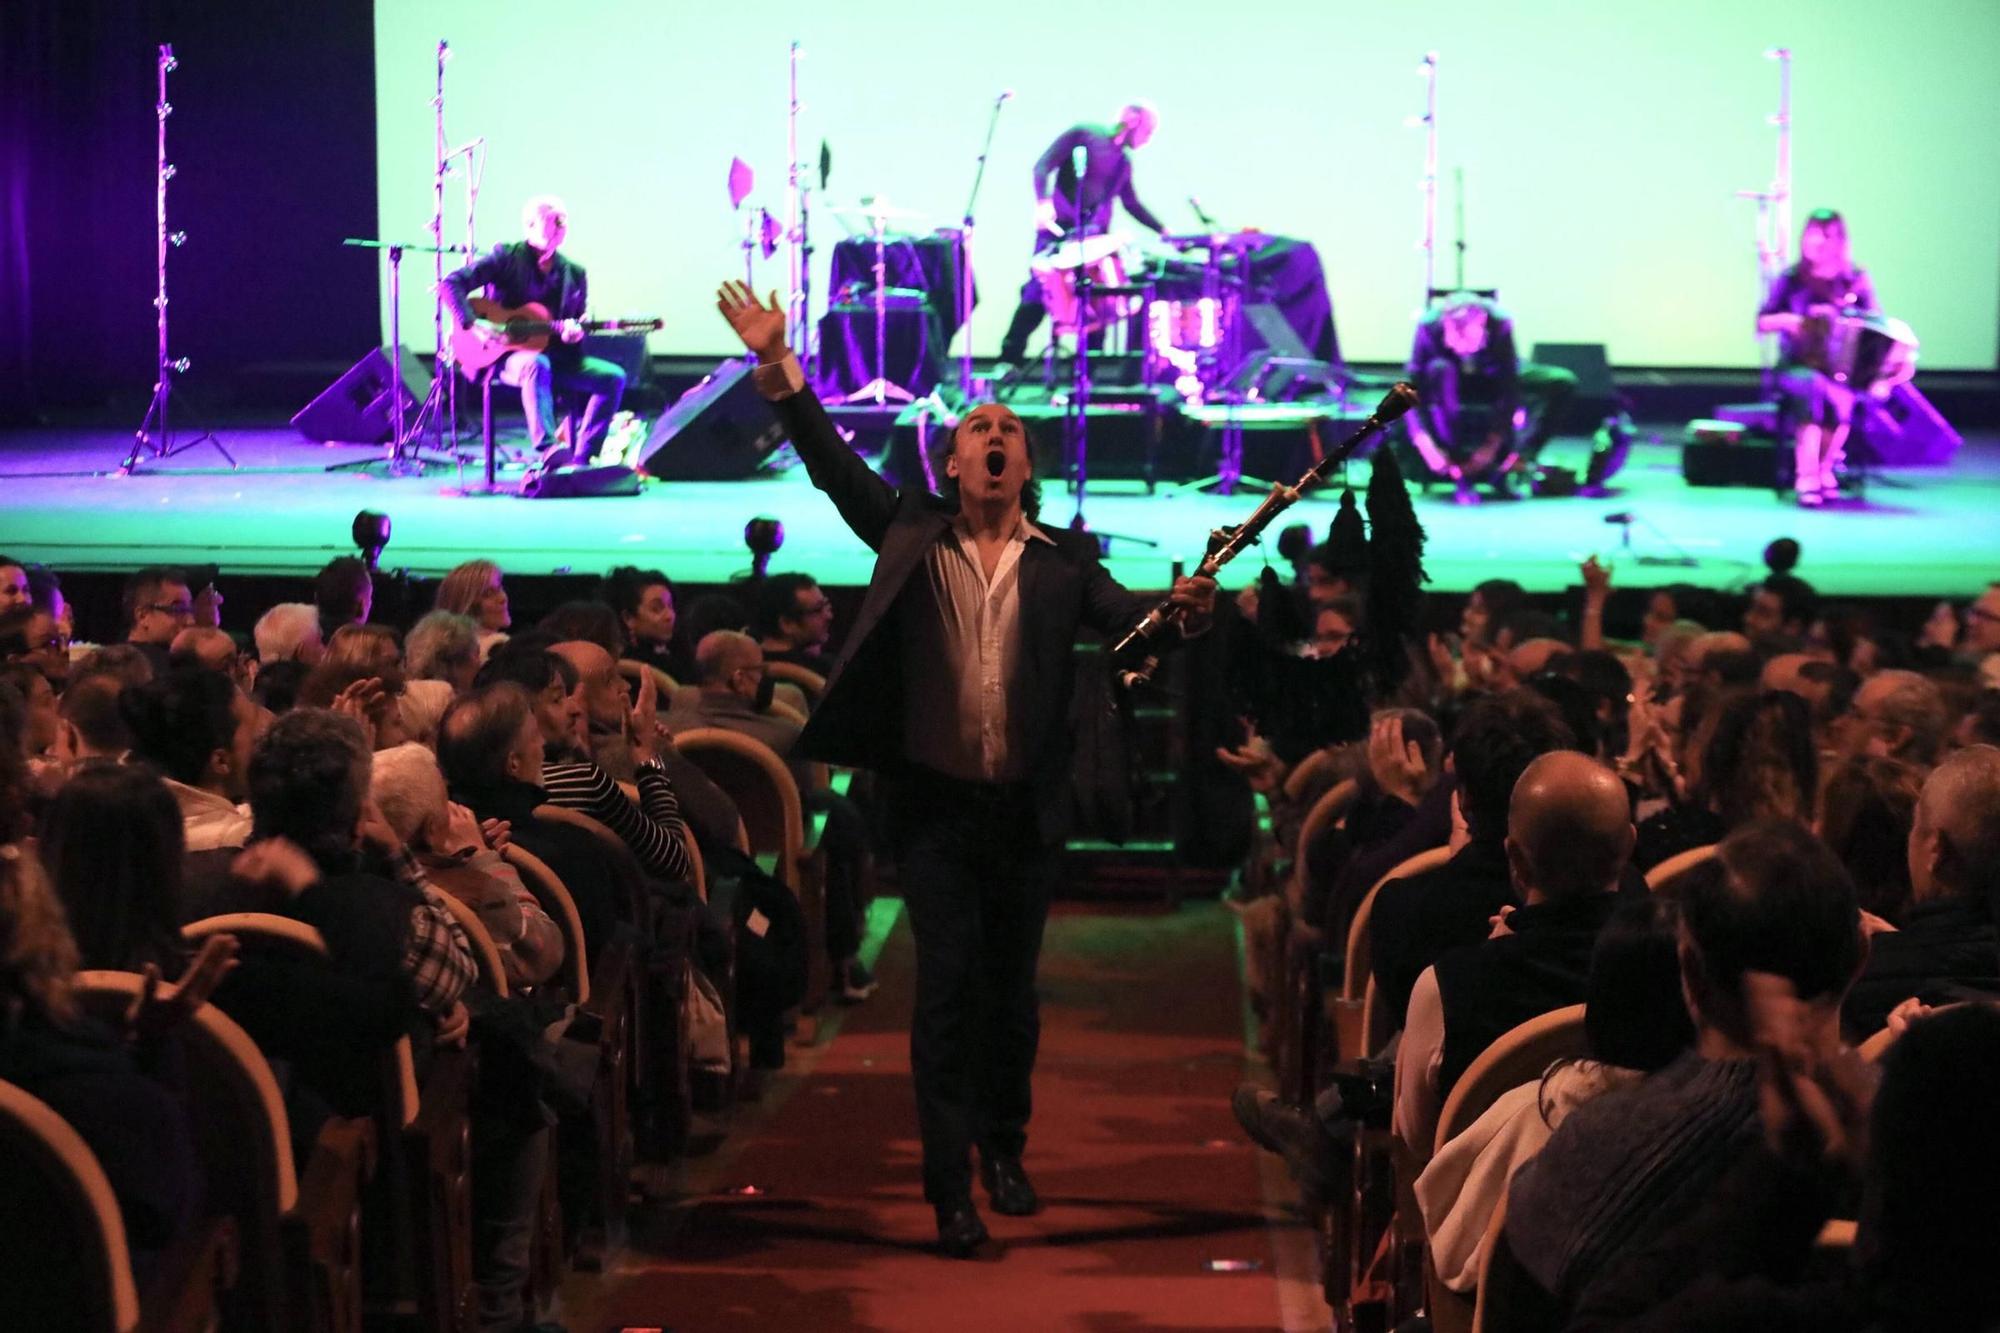 El concierto del gaitero Carlos Núñez en Gijón, en imágenes